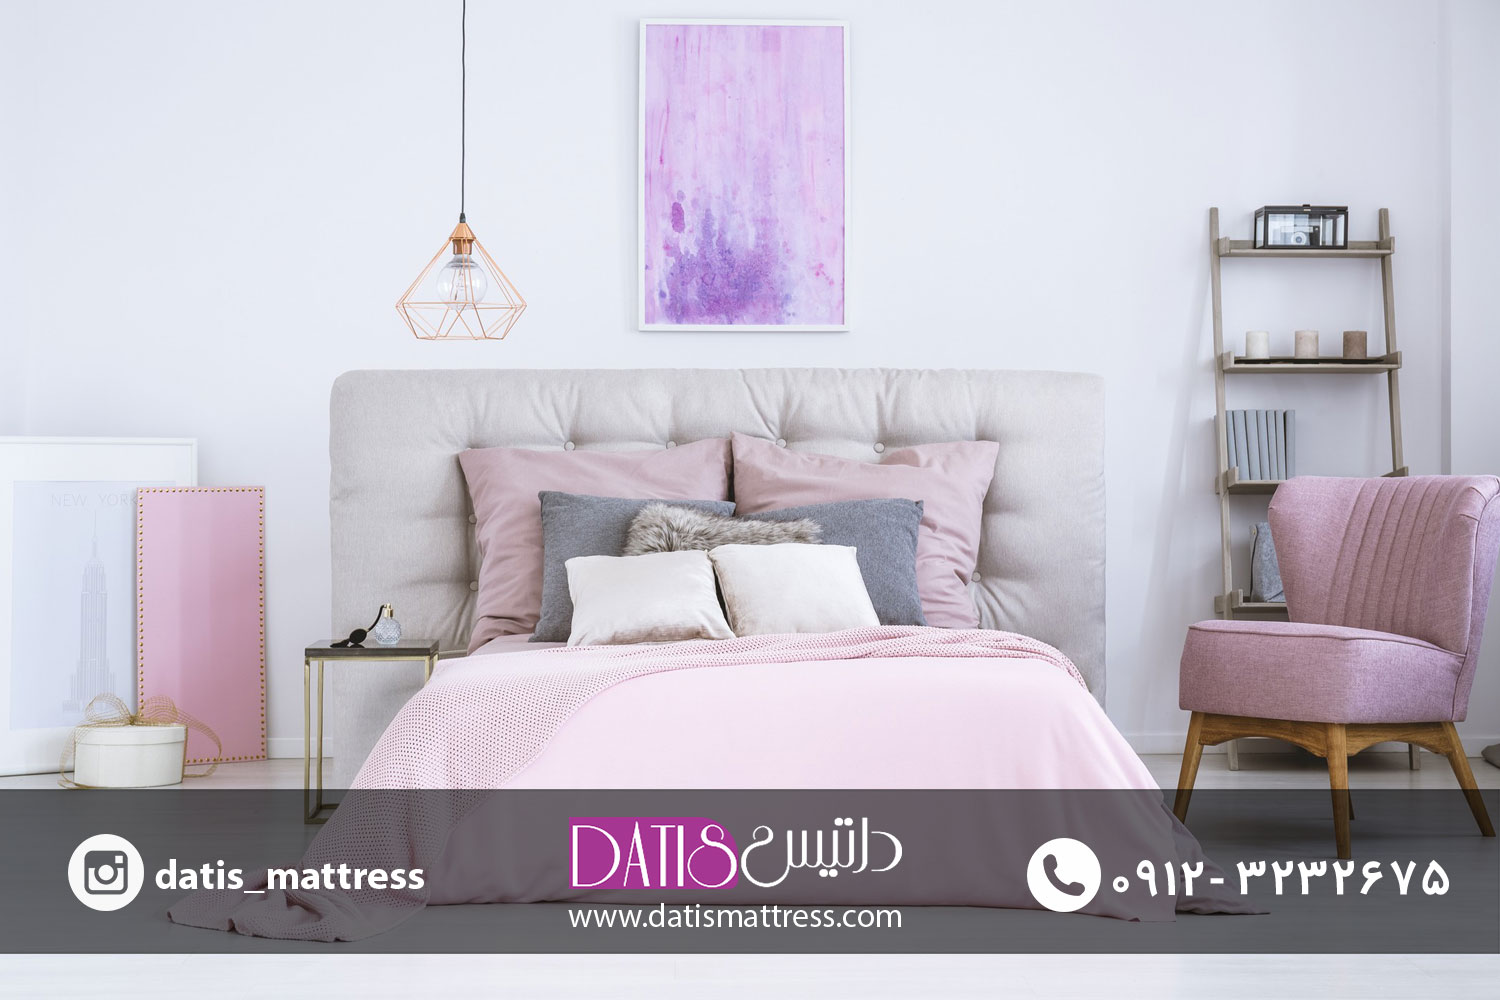 اتاق خواب رمانتیک شامل ملحفه های نرم، چراغ های کم نور، شمع ها، قالیچه های نرم، و پنل های پنجره ابریشمی است